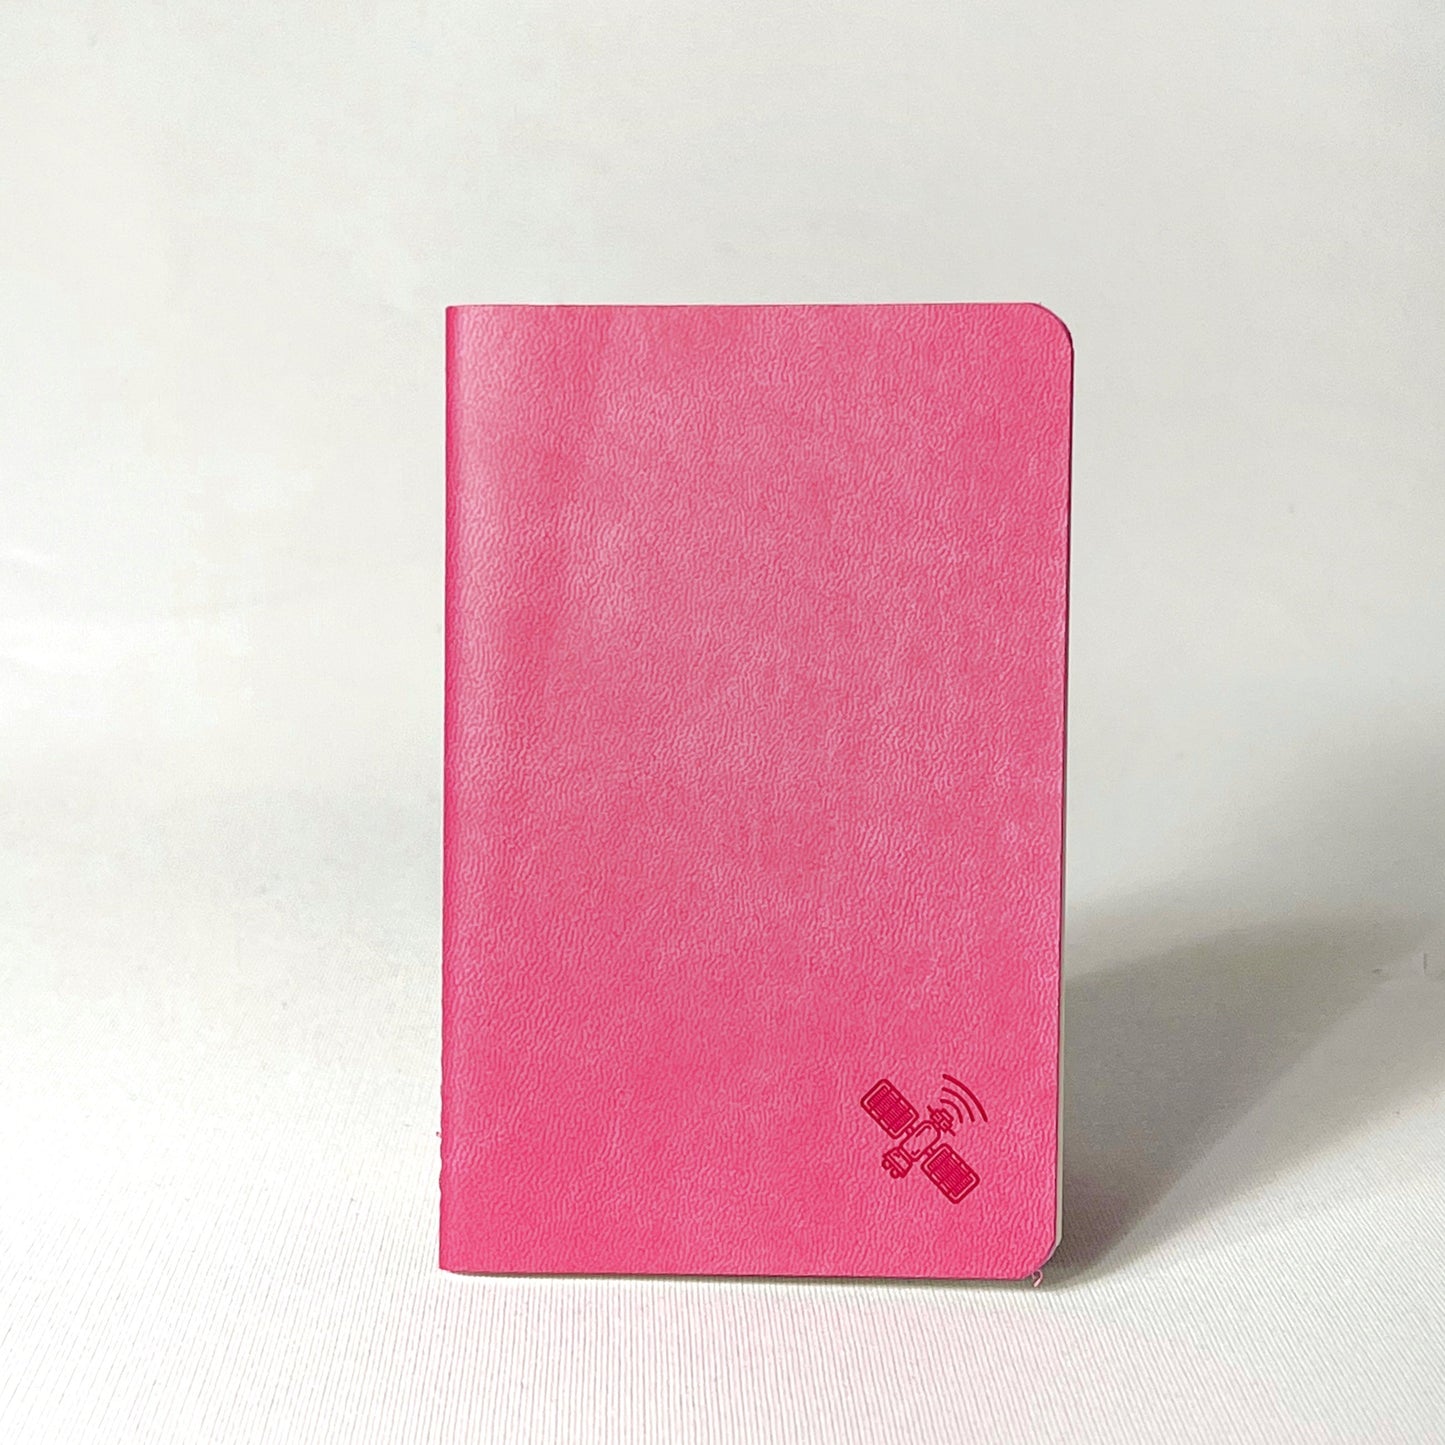 Pocket Notebooks: Tomoe River Paper